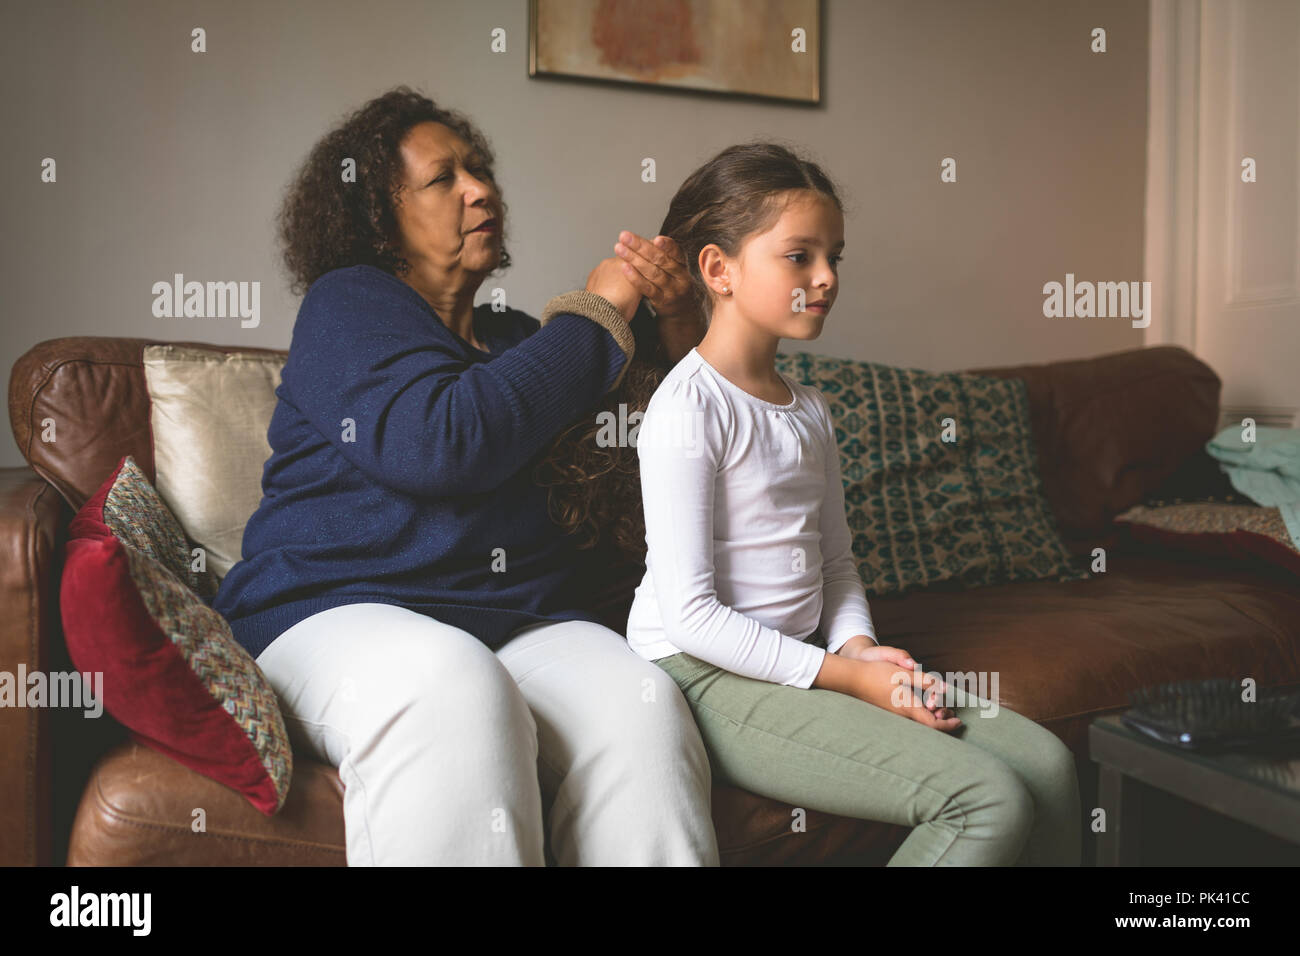 La abuela está haciendo el peinado de nieta Foto de stock